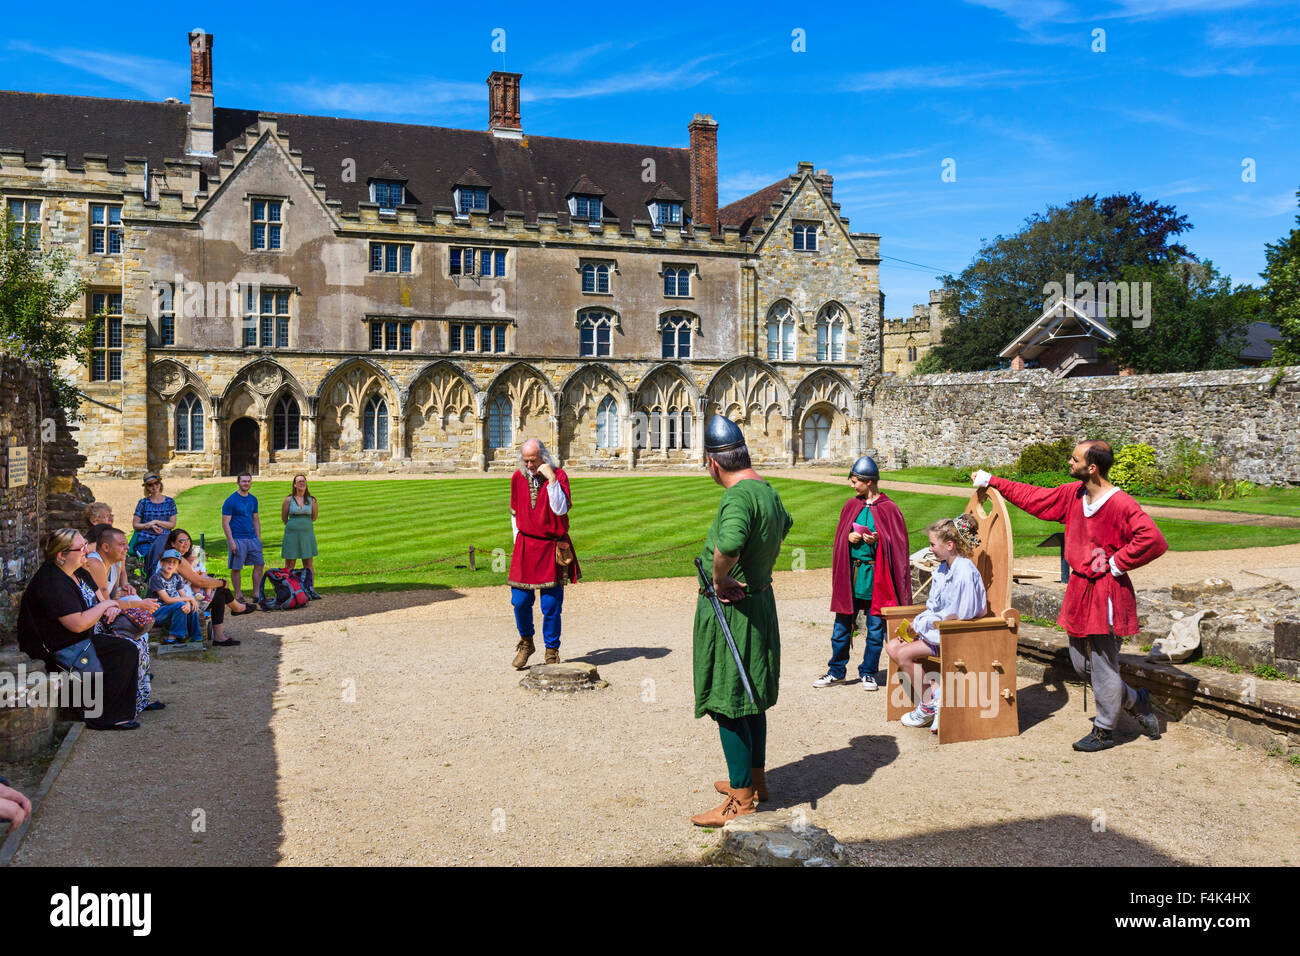 Los visitantes participatiing en la recreación histórica en frente de la Gran Sala del Abad (ahora una escuela) en la Abadía de Battle, E Sussex, UK Foto de stock